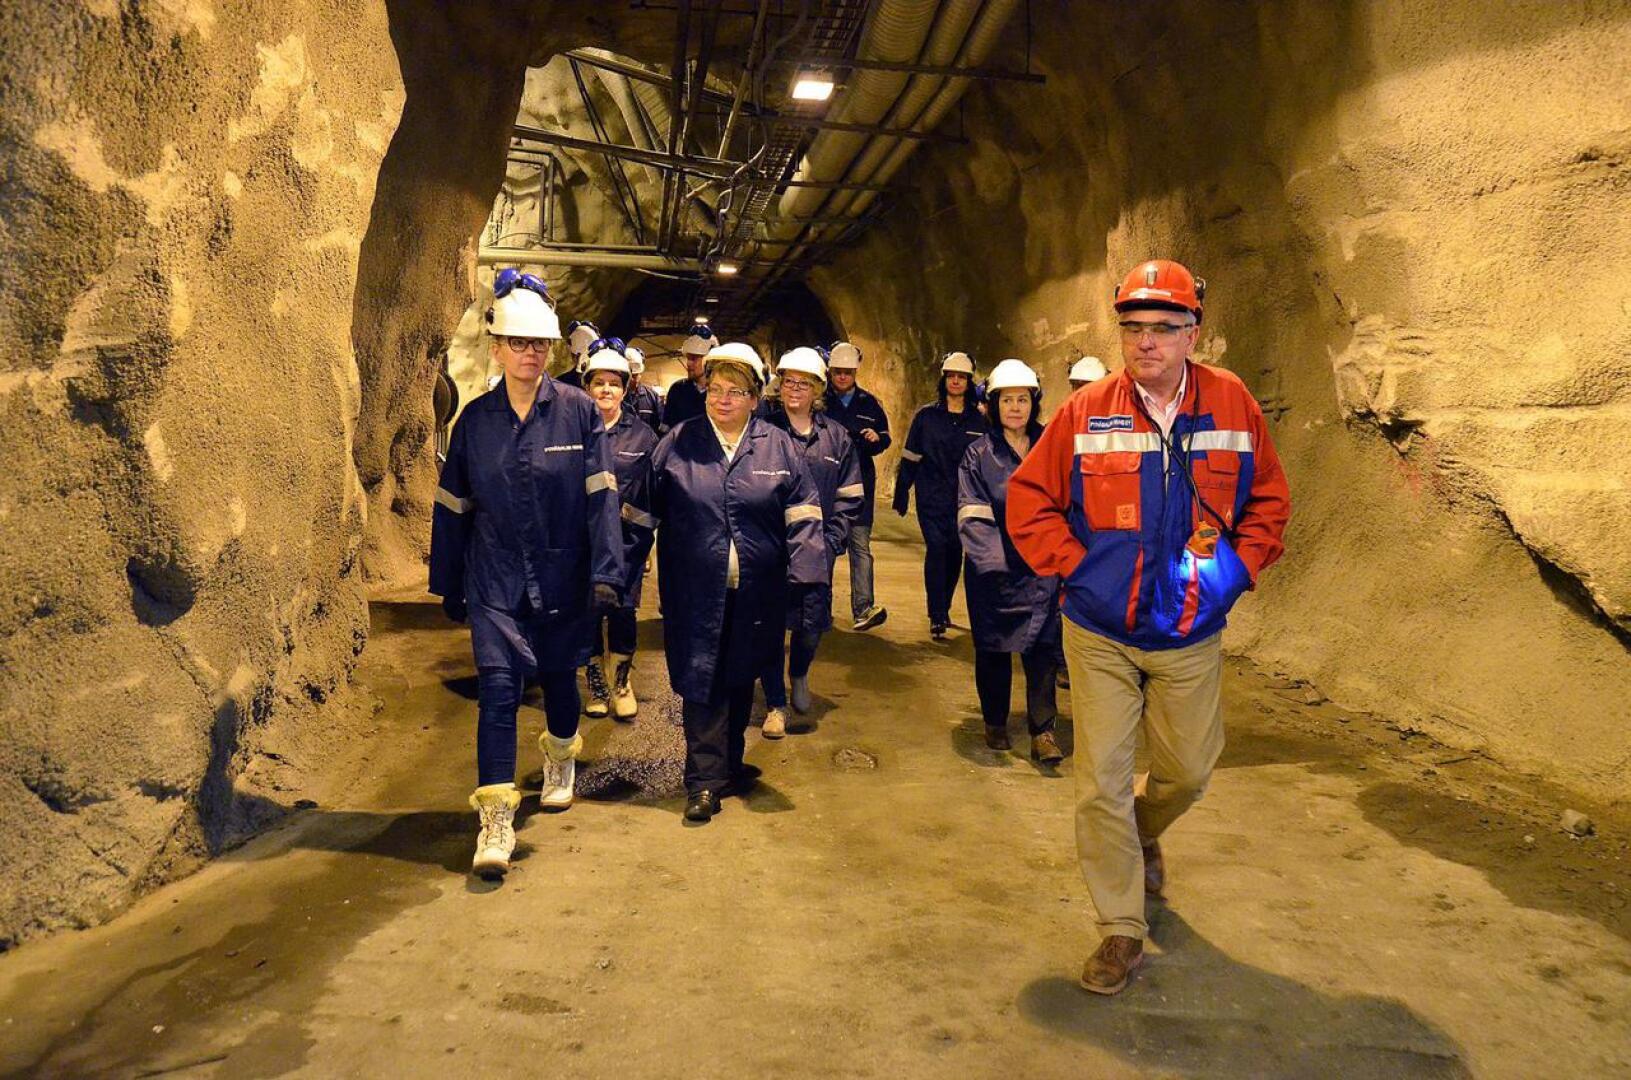 Pyhäsalmi Mine Oy:n toimitusjohtaja Kimmo Luukkonen esittelemässä kaivoksen toimintaa vierailevalle ryhmälle. Yliopistoinstituutin kaivoksessa tekemä hiukkastutkimus voi johtaa malminetsinnän mullistumiseen.